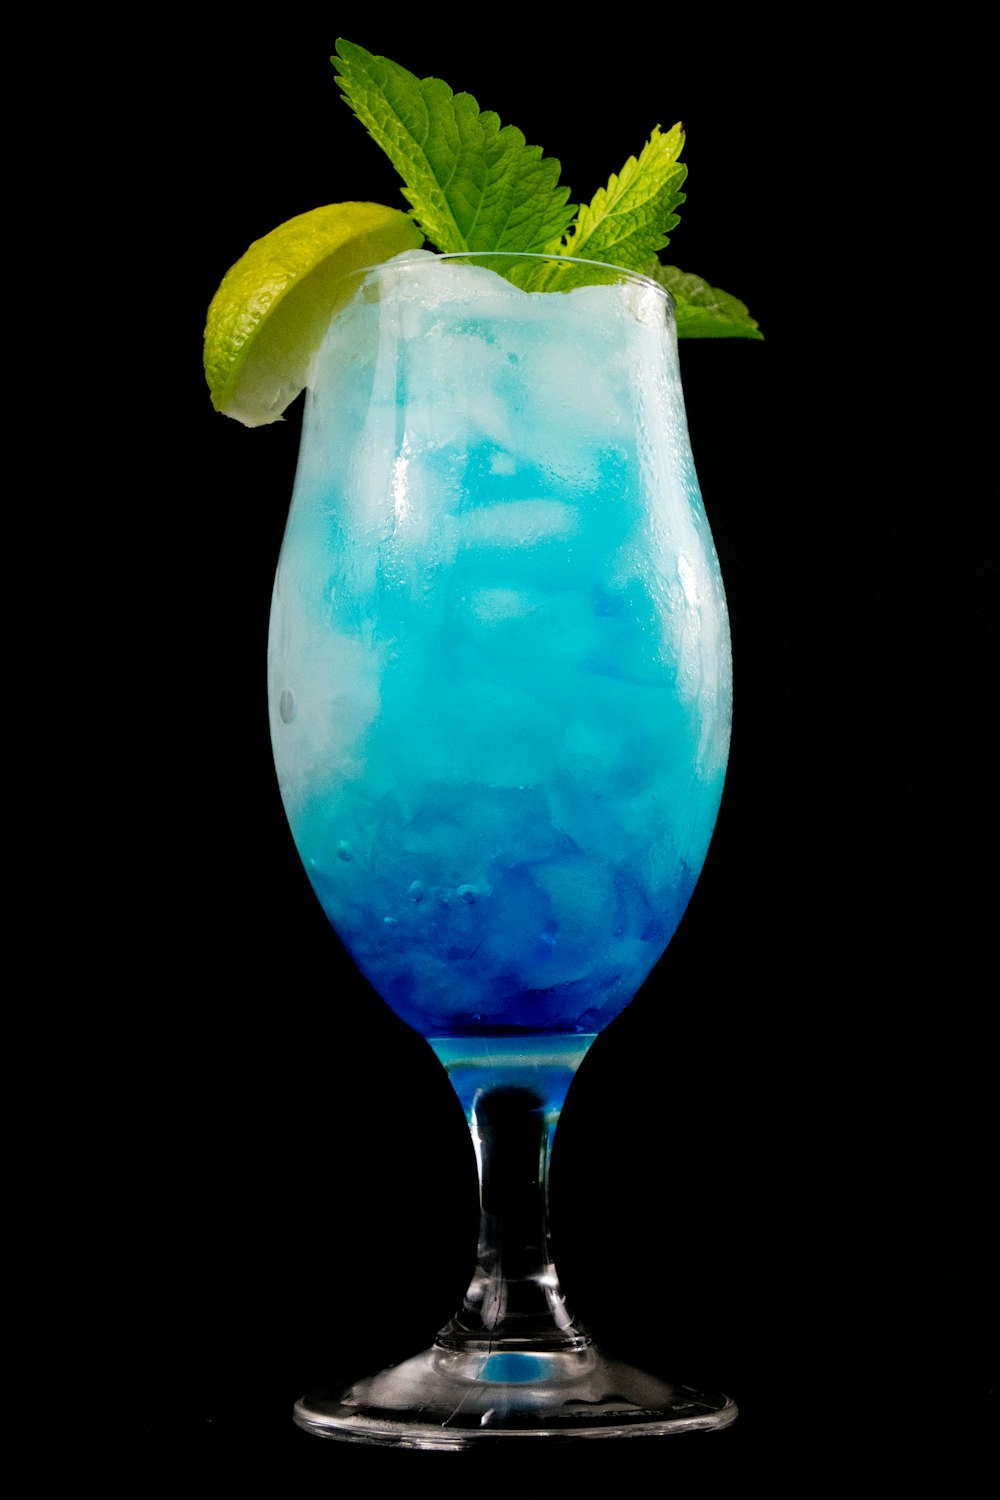 スライスしたレモンを入れた透明なグラスに入った青い液体